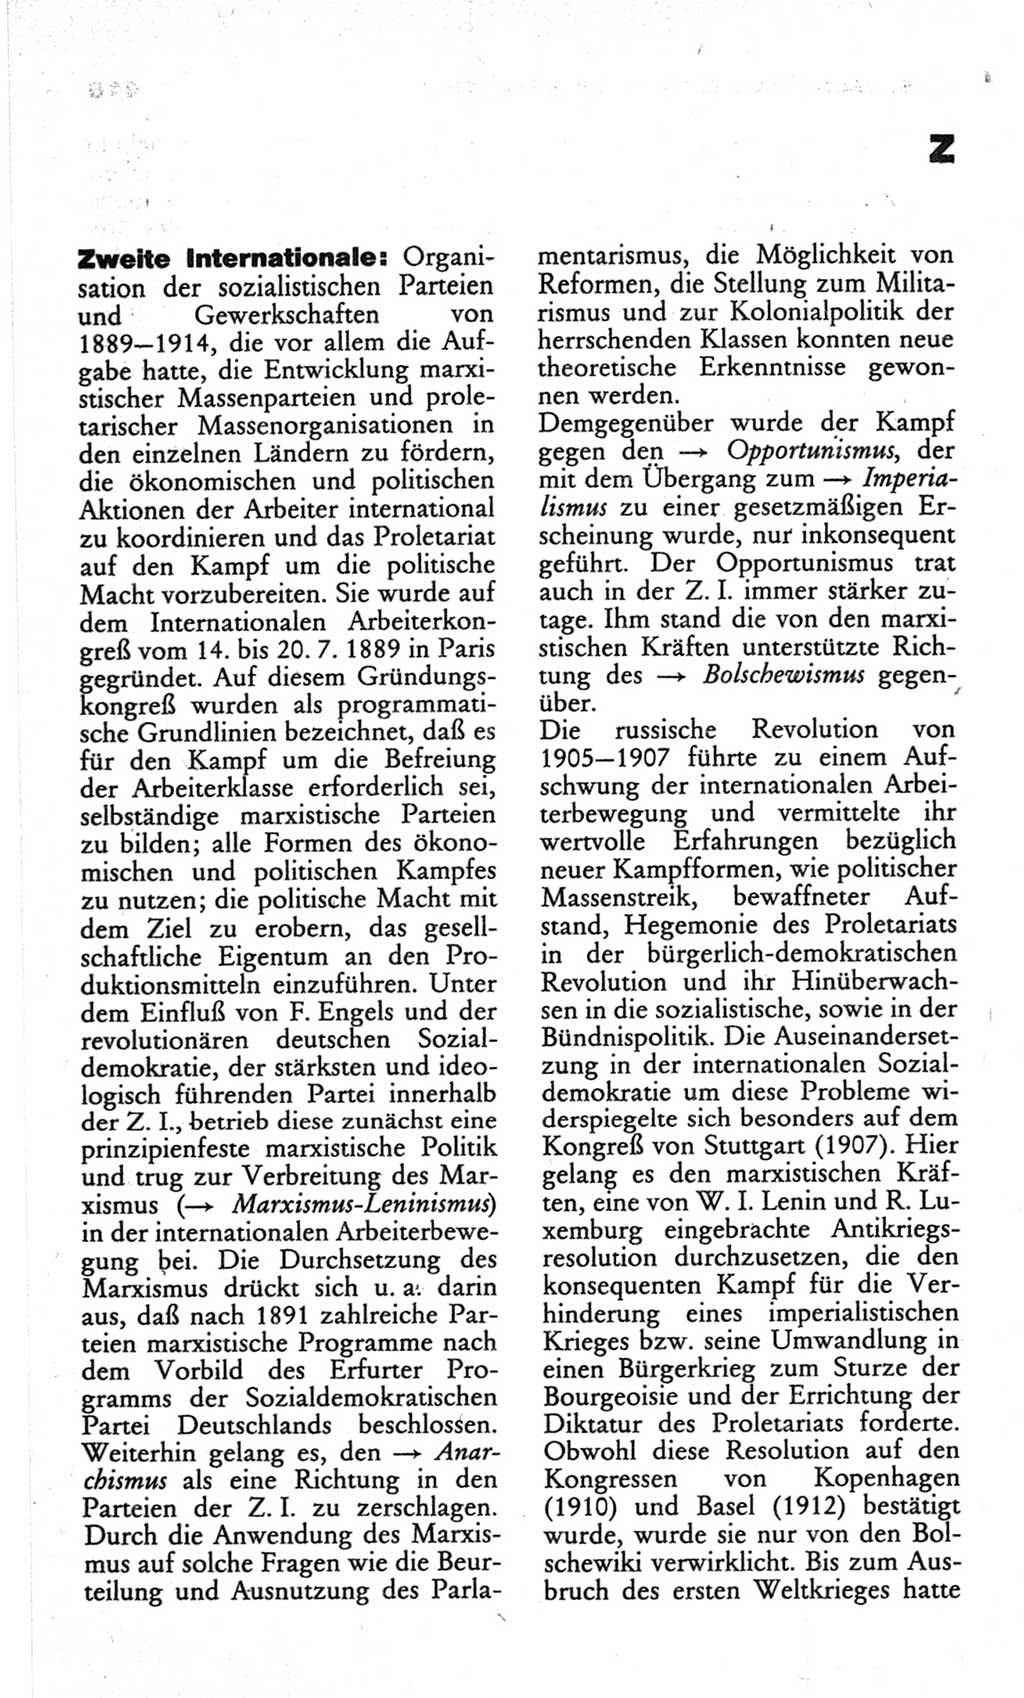 Wörterbuch des wissenschaftlichen Kommunismus [Deutsche Demokratische Republik (DDR)] 1982, Seite 419 (Wb. wiss. Komm. DDR 1982, S. 419)